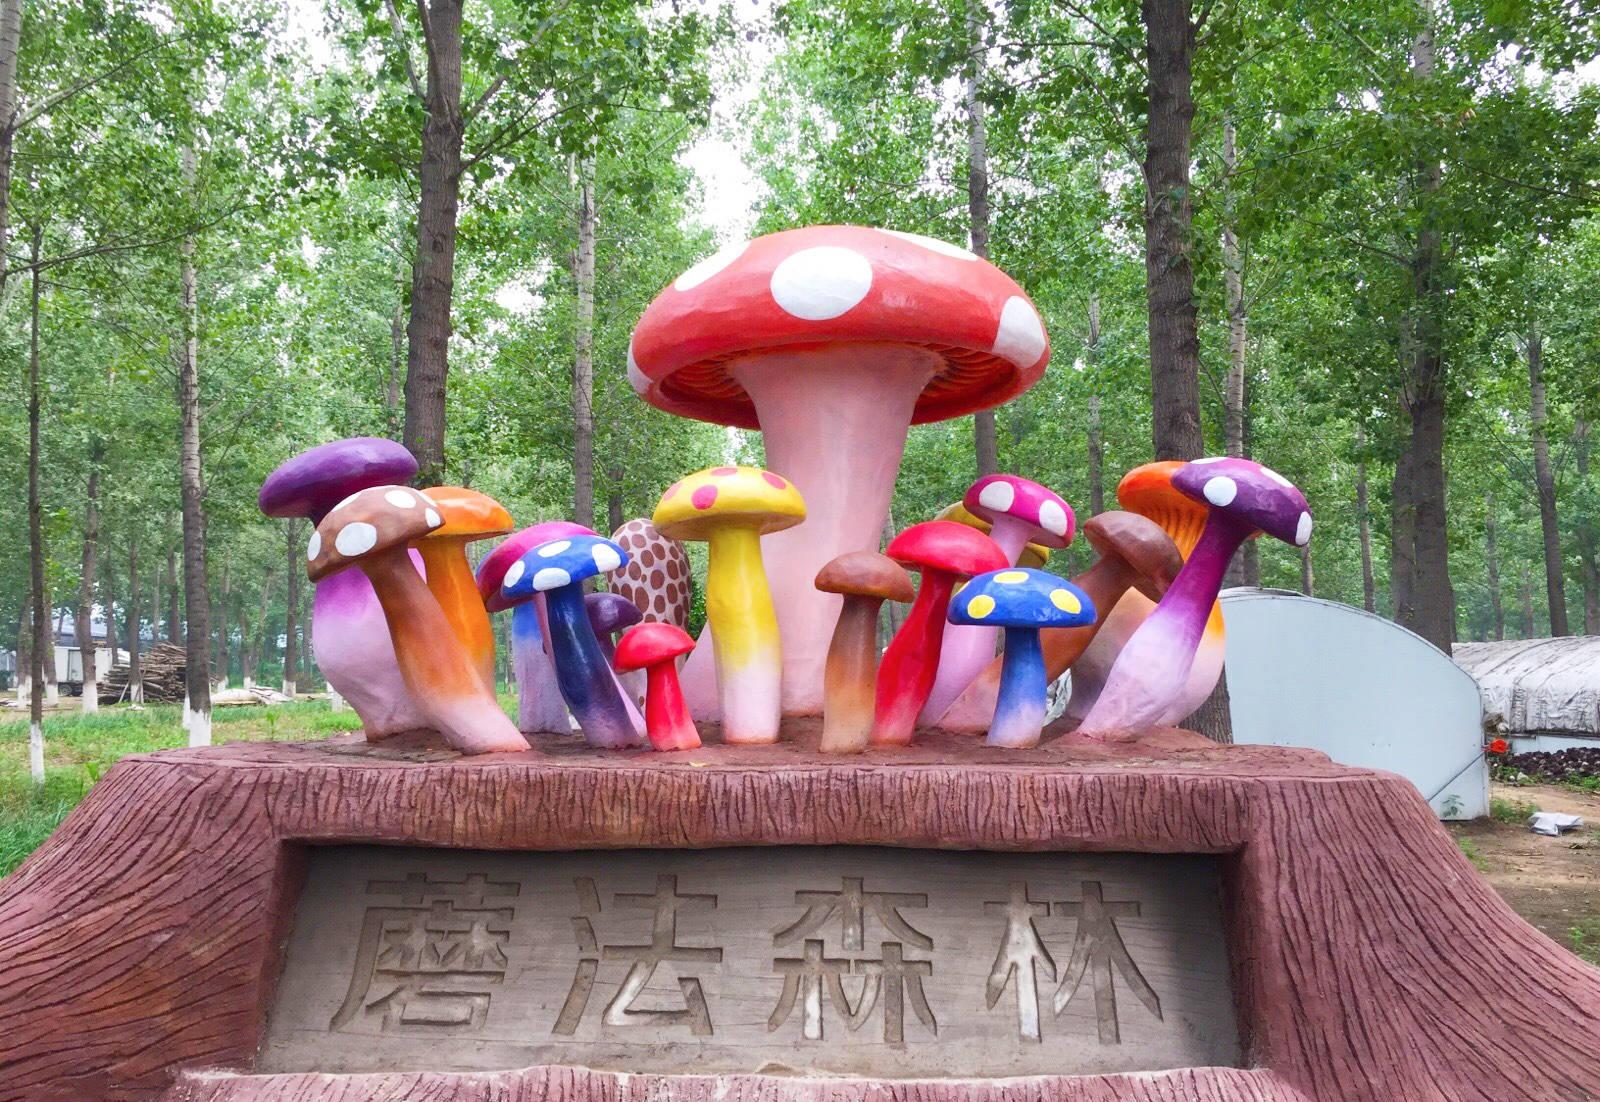 原创北京5个超赞的户外亲子乐园,每周去一个,这个春天有的玩了